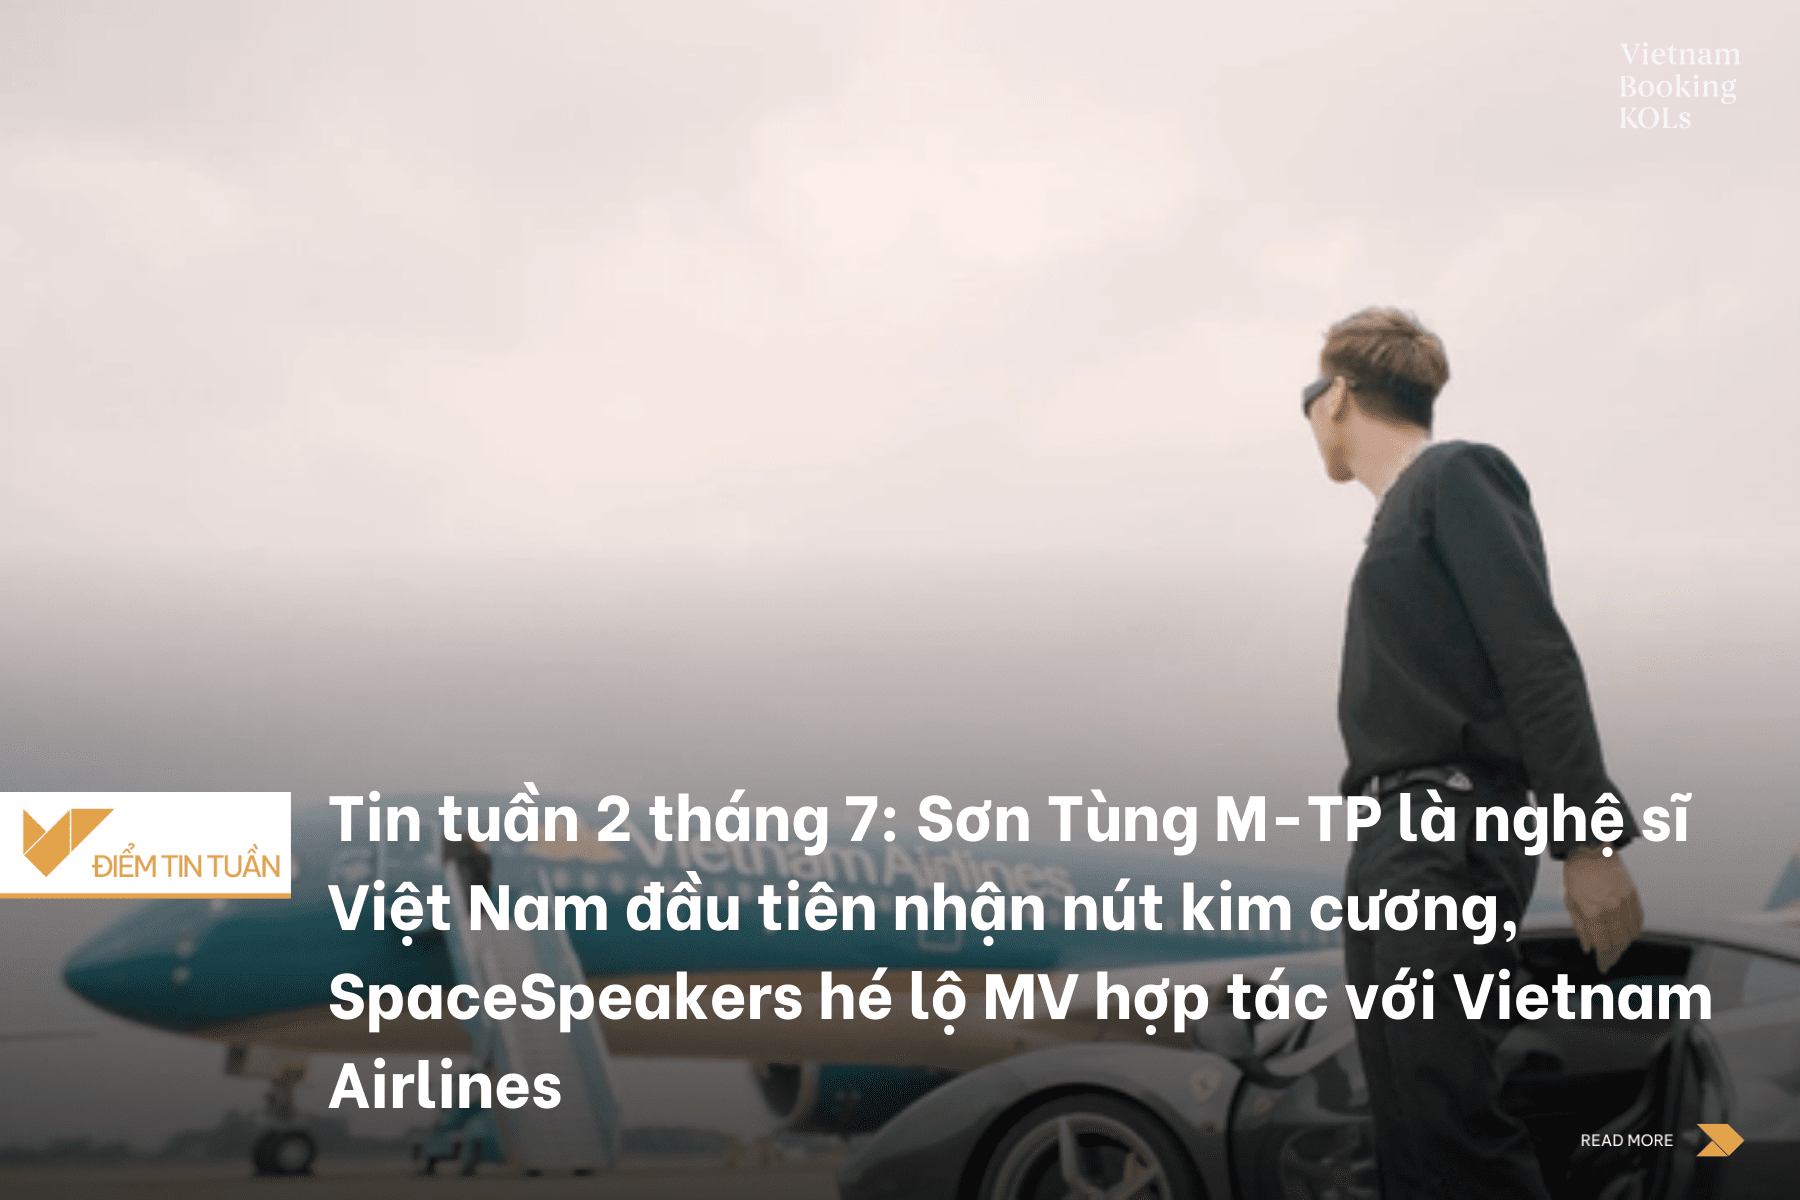 Tin tuần 2 tháng 7: Sơn Tùng M-TP là nghệ sĩ Việt Nam đầu tiên nhận nút kim cương, SpaceSpeakers hé lộ MV hợp tác với Vietnam Airlines